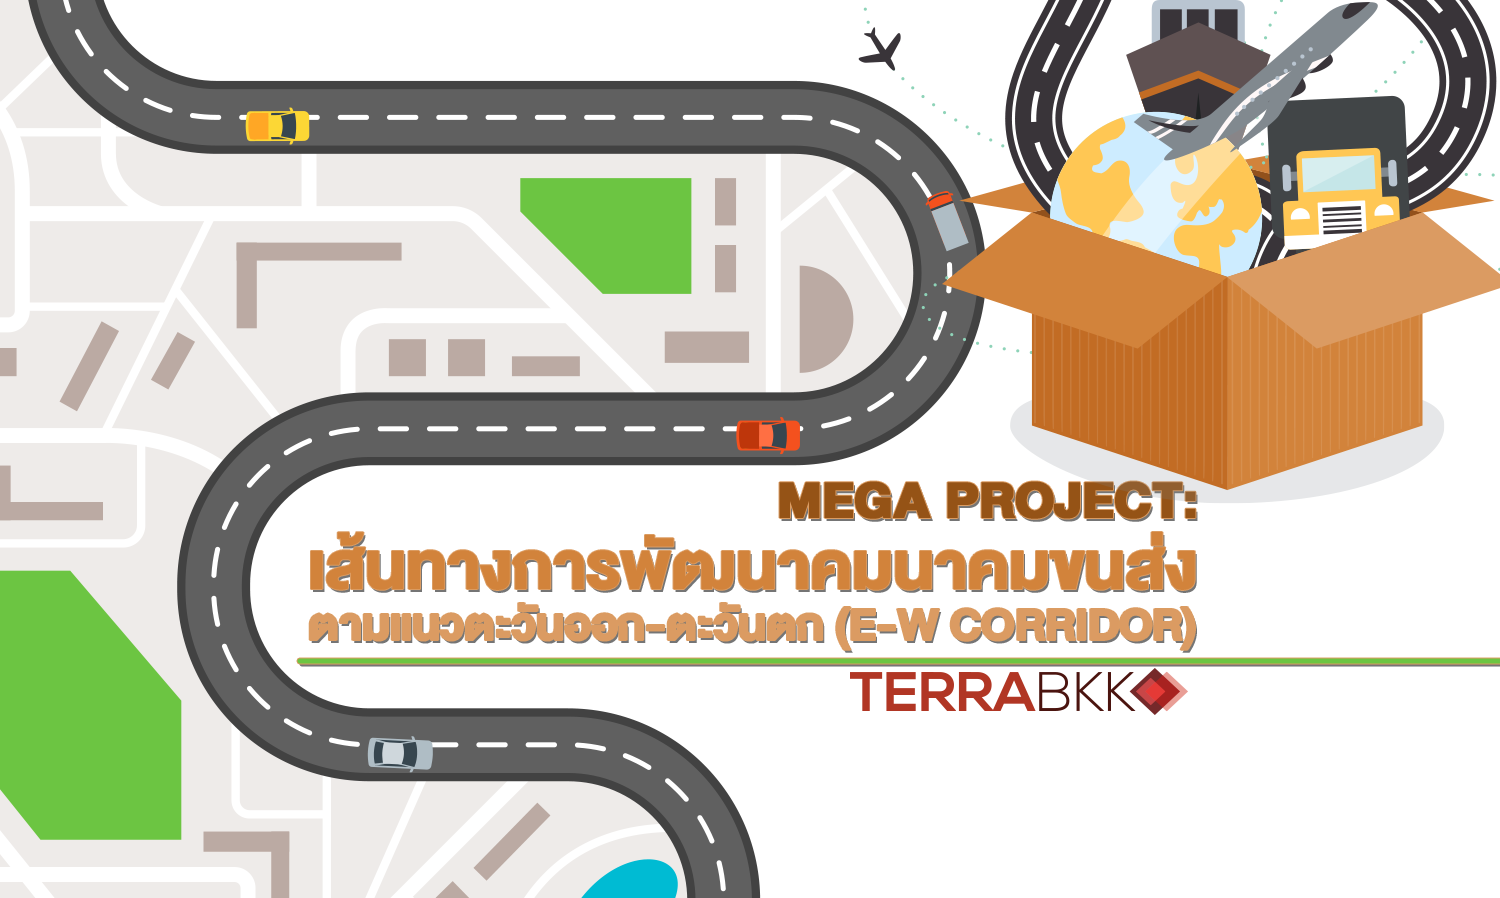 Mega Project : เส้นทางการพัฒนาคมนาคมขนส่งตามแนวตะวันออก-ตะวันตก (E-W Corridor)